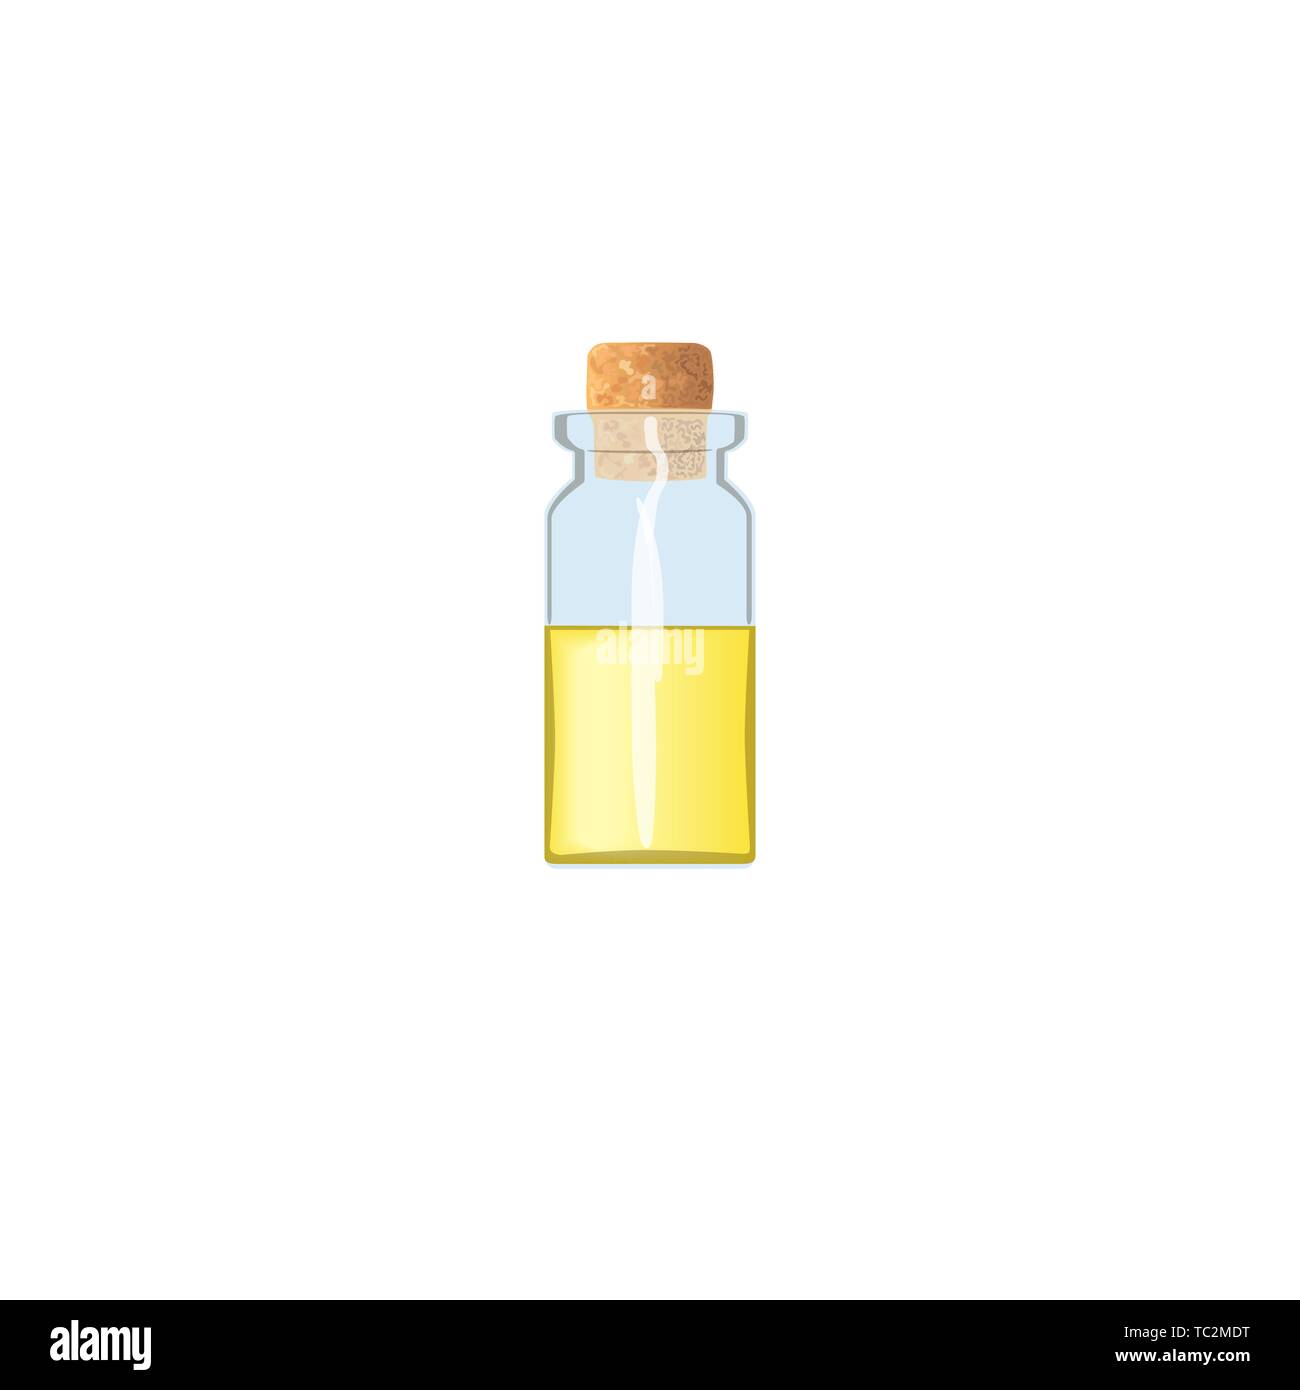 Öl leeren Durchstechflasche mit gelben Flüssigkeit und Kork, durchsichtig  Icy - weiße Fläschchen, Duft Flasche, Medizin Flasche, Glas. Für Drogen,  Pillen, Medizin, Aromatherapie Stock-Vektorgrafik - Alamy